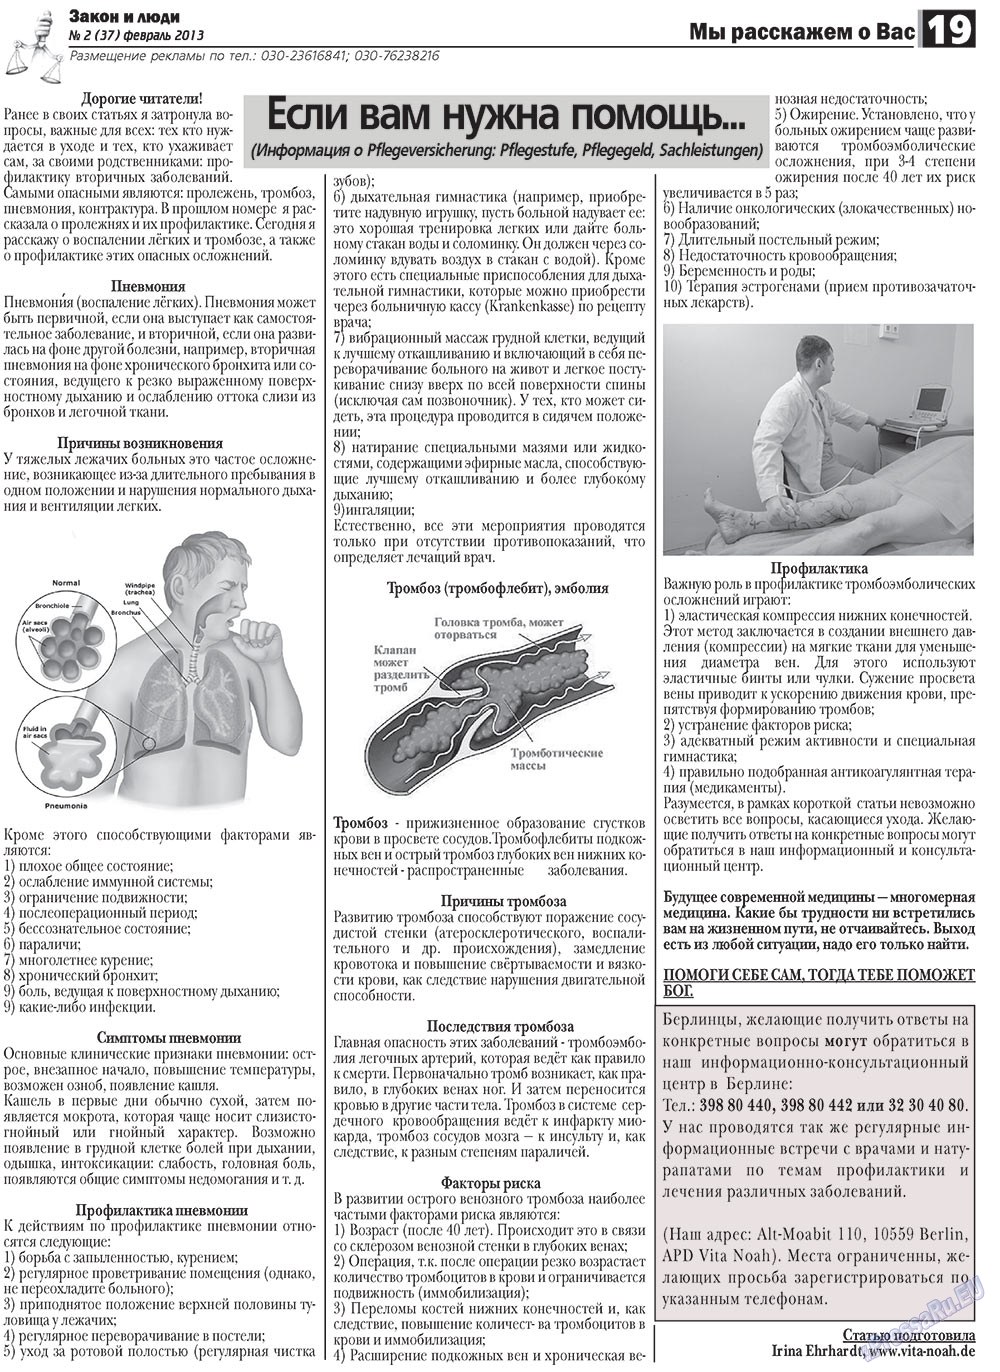 Закон и люди, газета. 2013 №2 стр.19